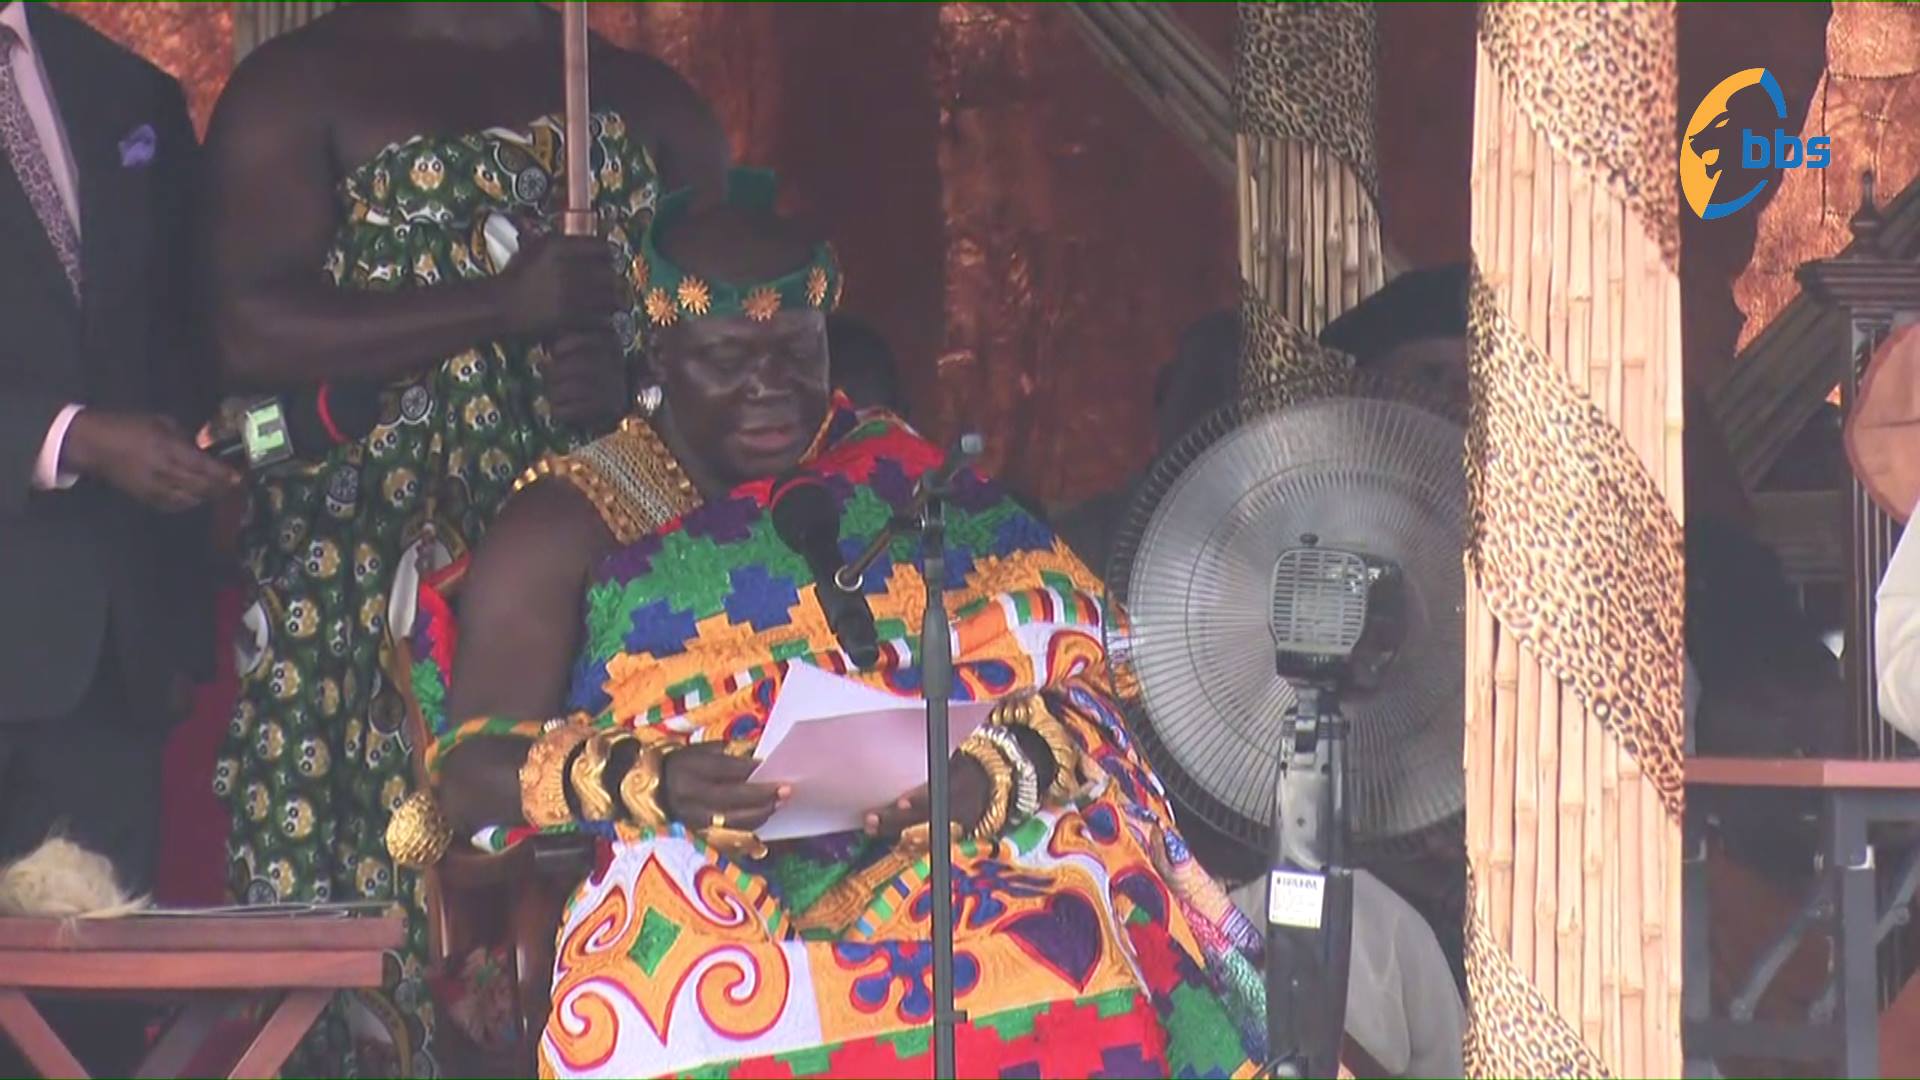 Fight poverty,ignorance and disease through education. -Otumfuo Osei Tutu II to Kabaka of Buganda